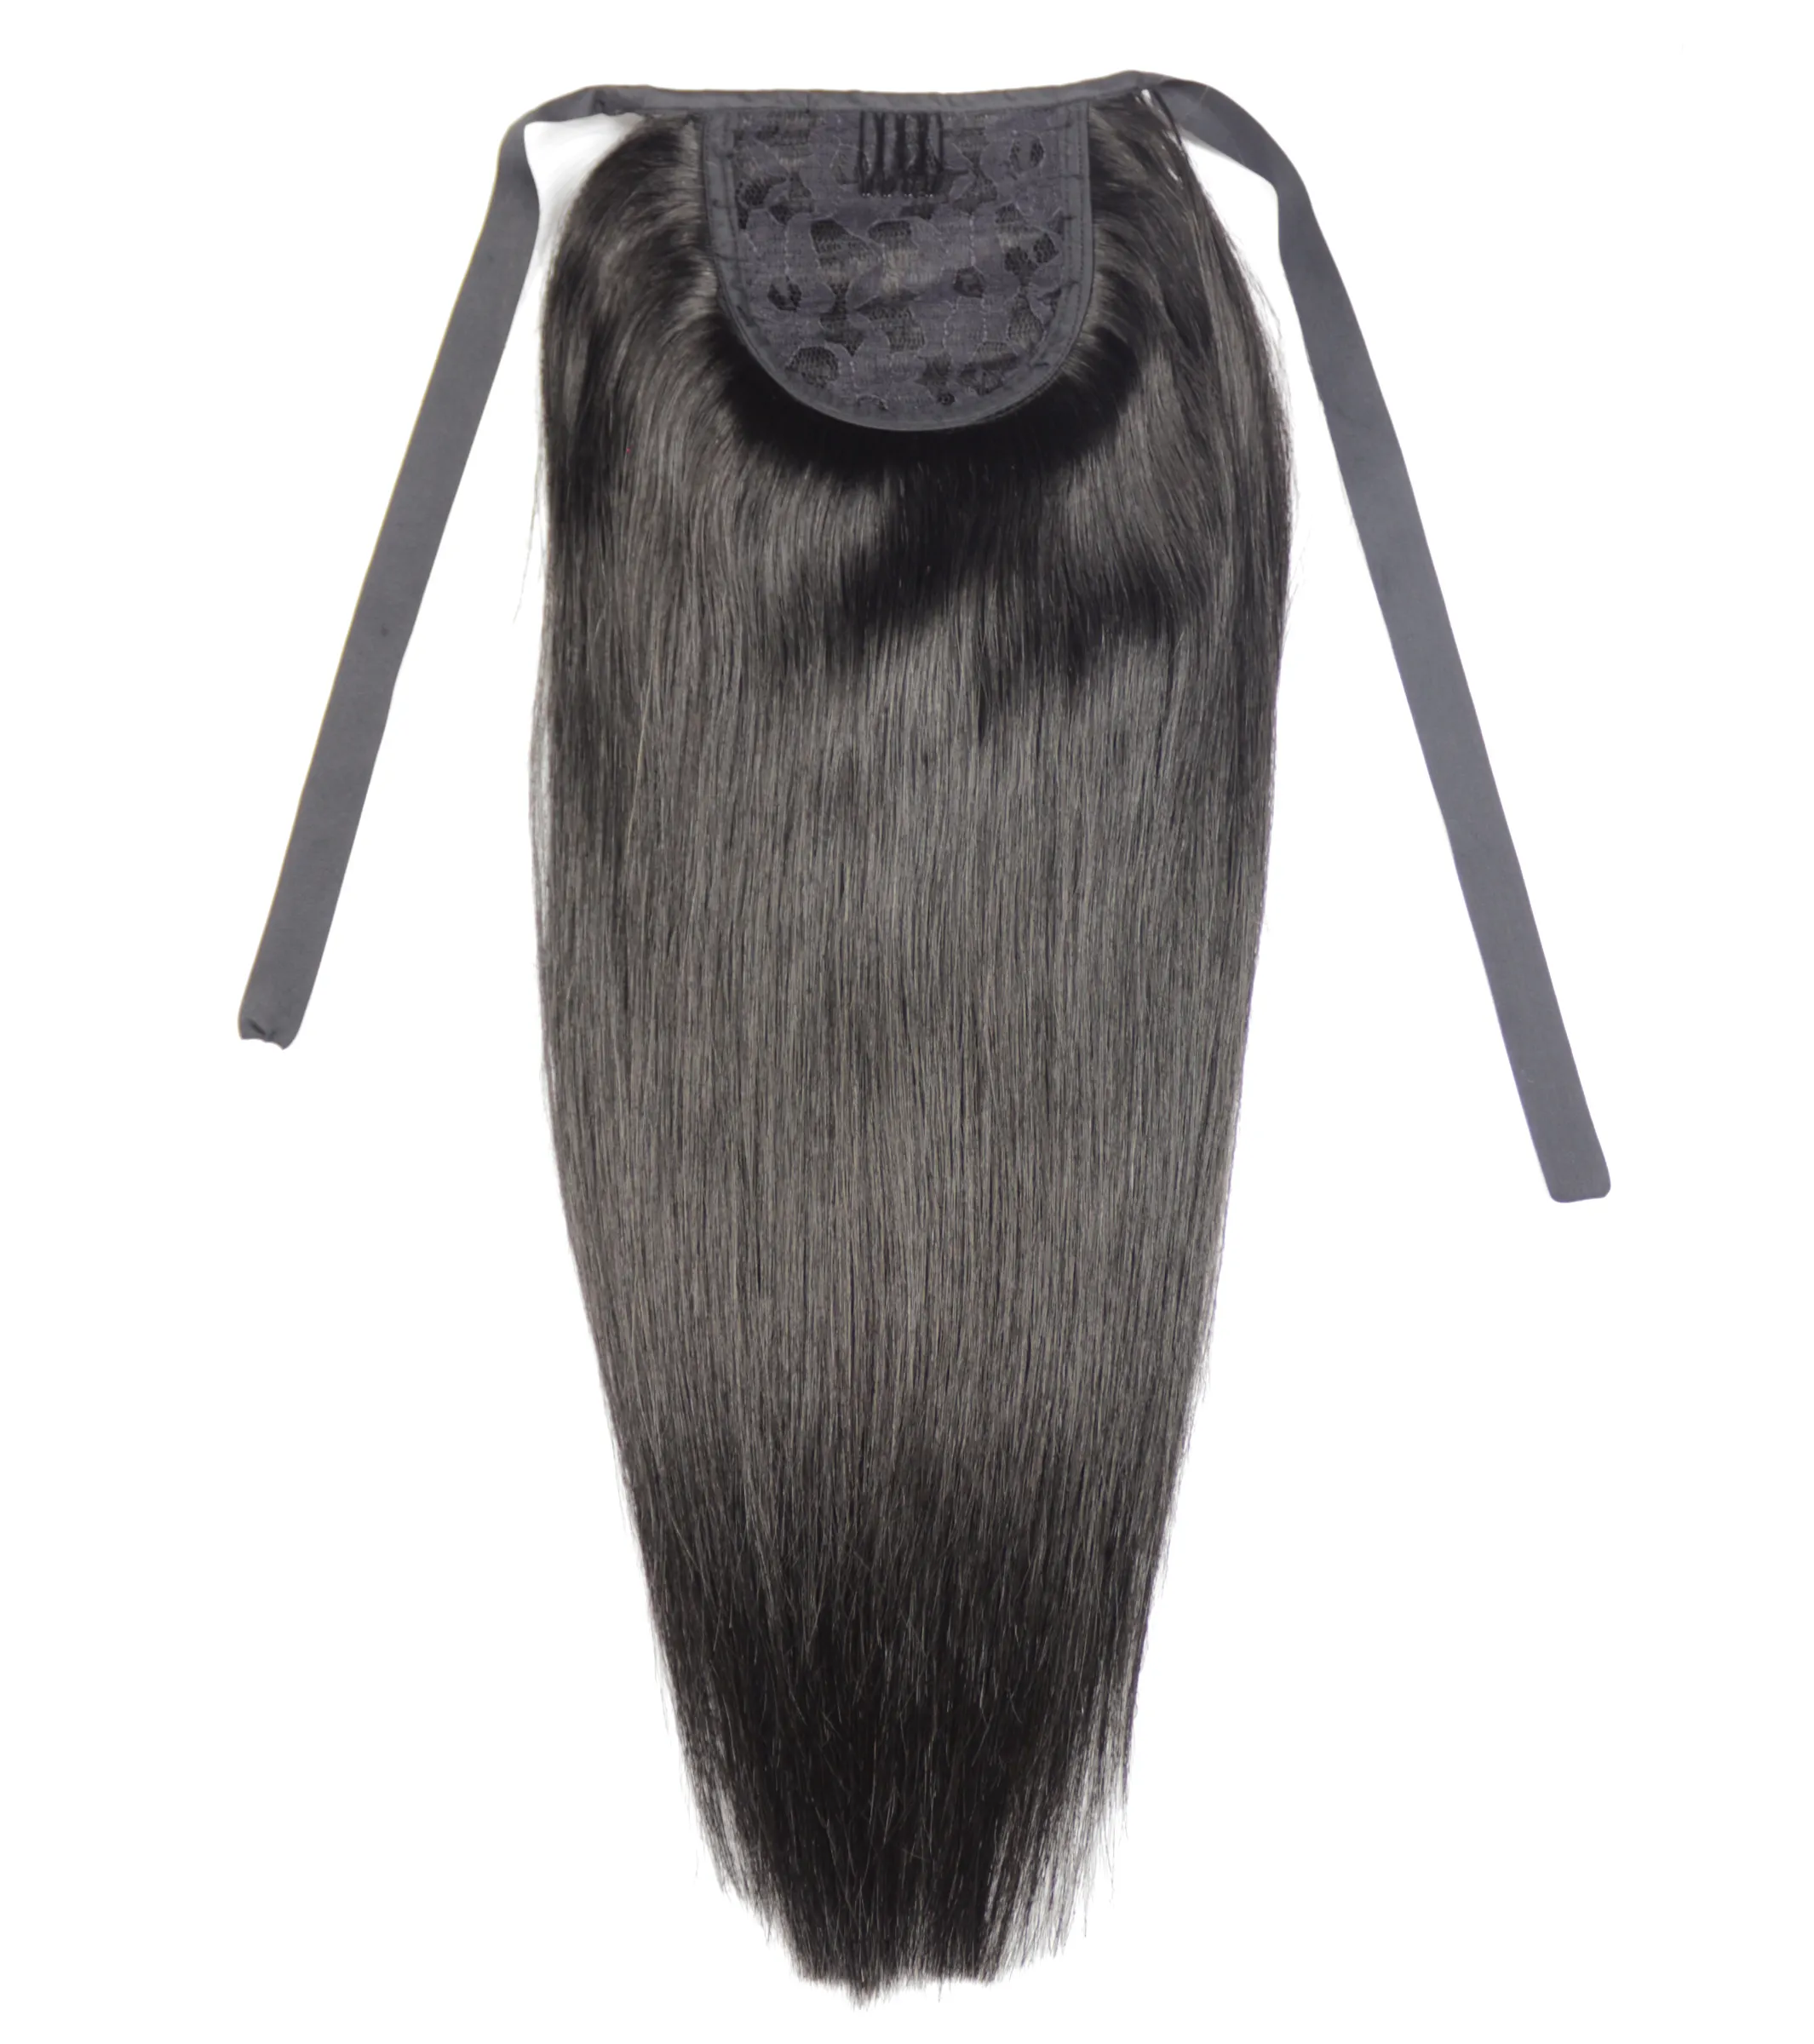 100g 16 "-20" Maszyna Made Made Remy Włosy Wstążka Ponytail Clipps-In Human Hair Extensions Horsetail Naturalne Proste Włosy 1B Kolor